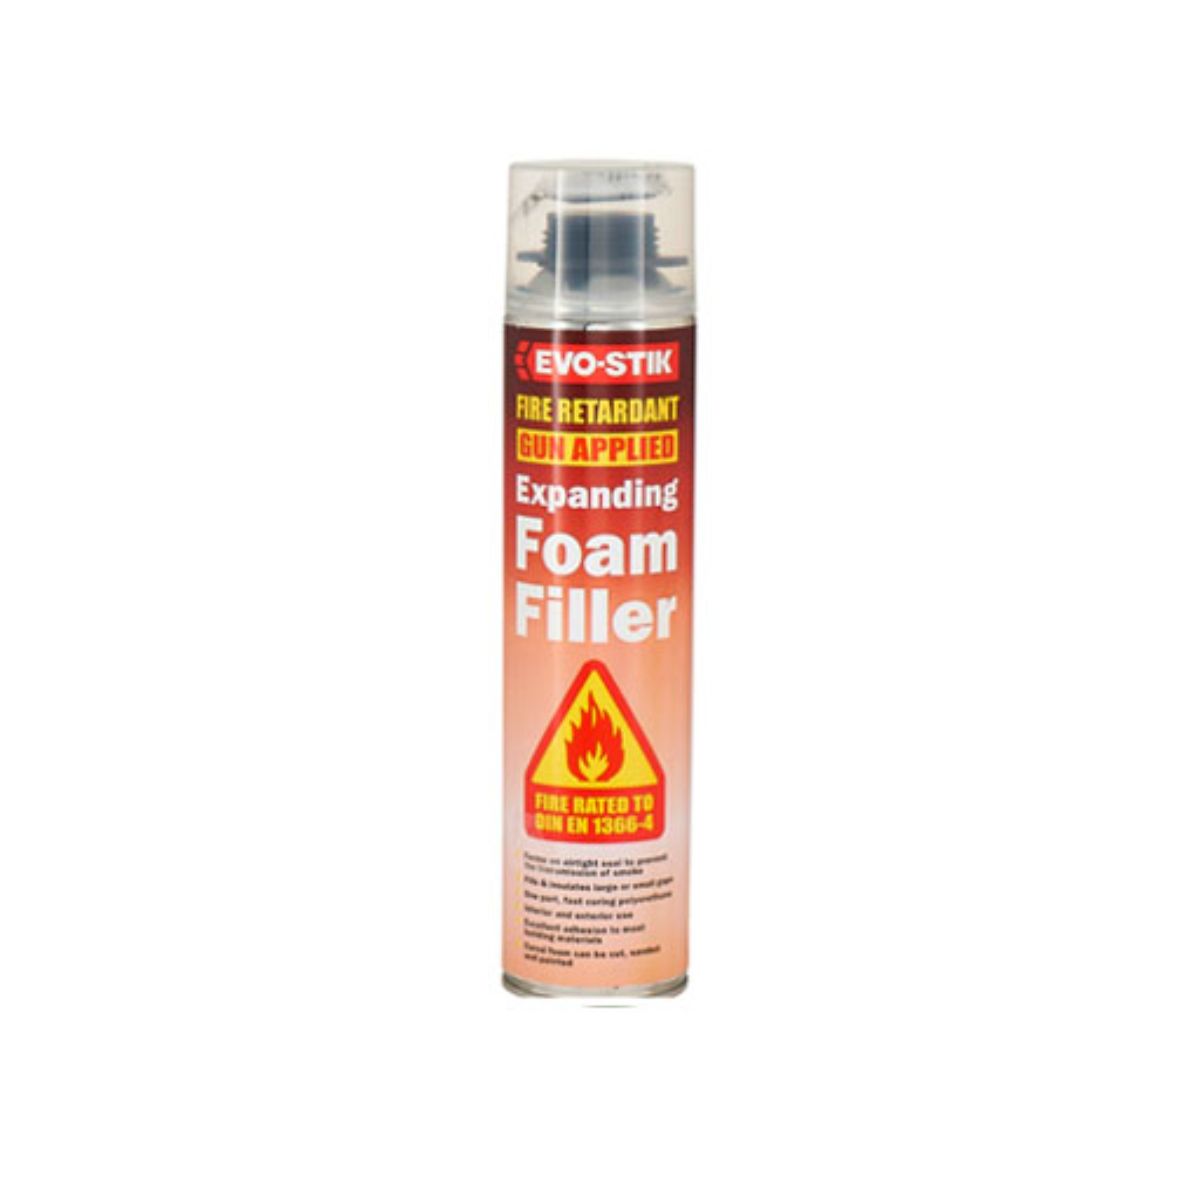 Fire Resistant Foam